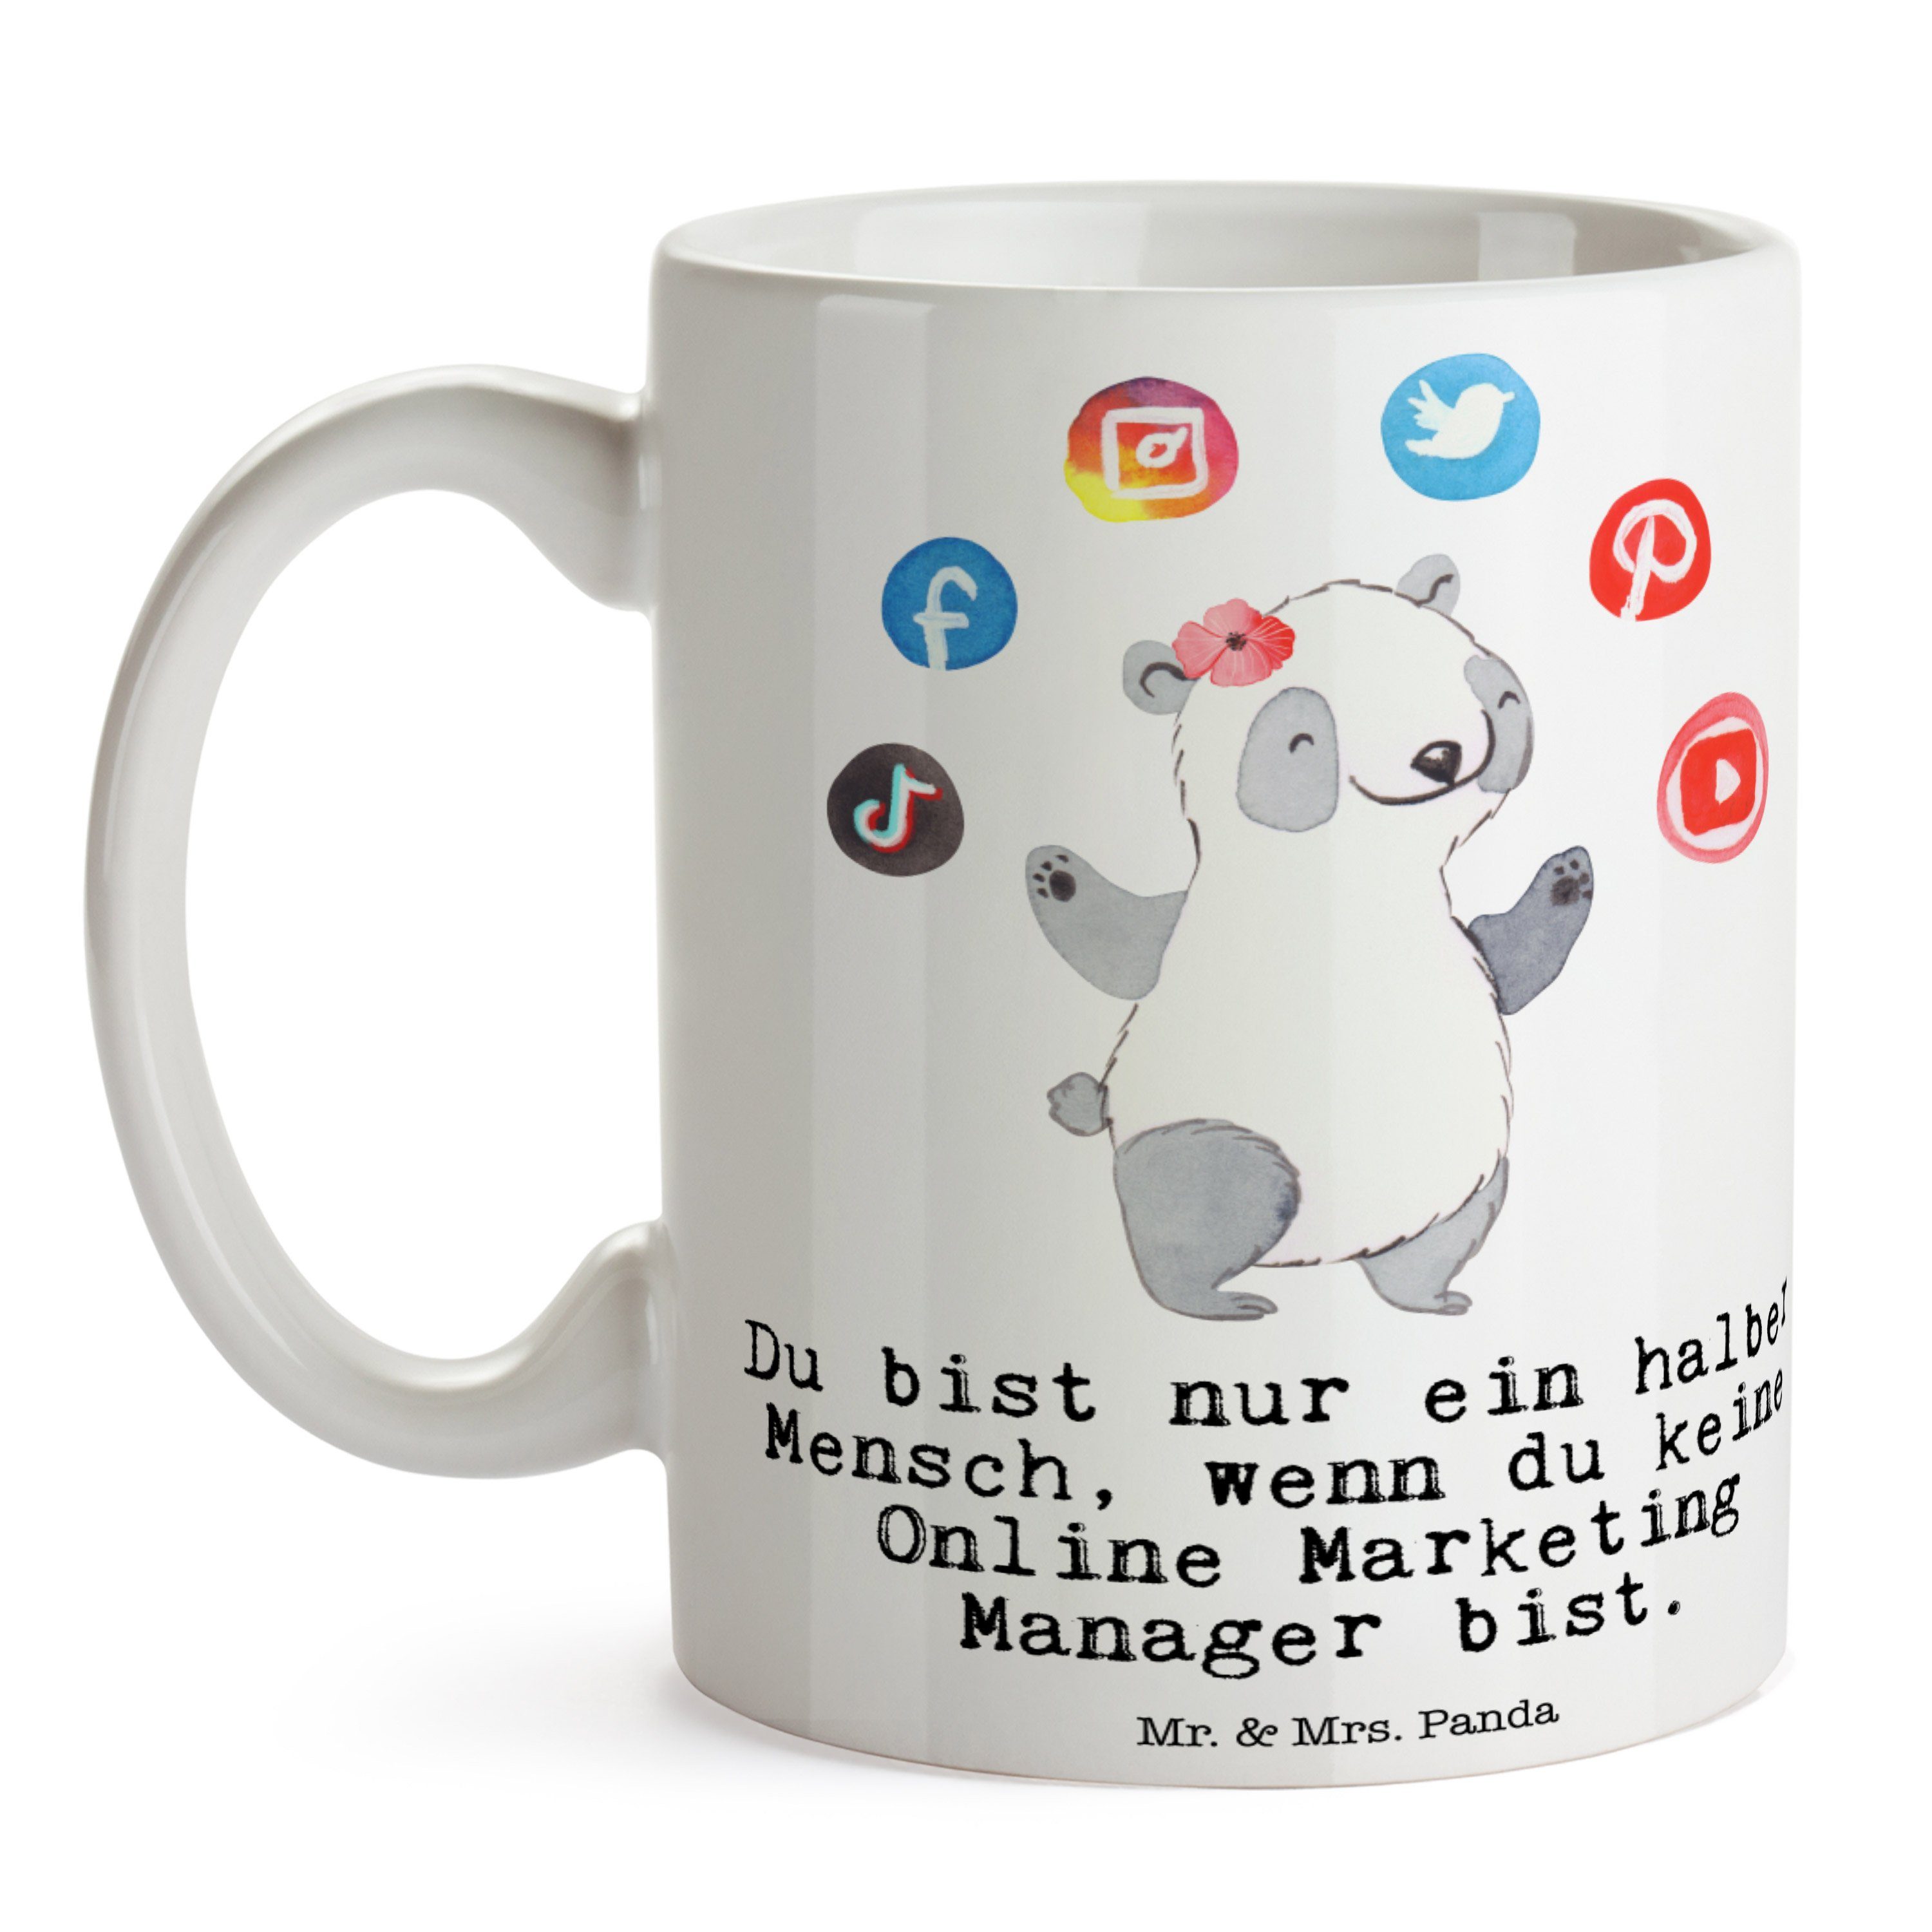 Mr. & Mrs. Panda - Manager Weiß Kaff, Marketing mit Tasse Dankeschön, Geschenk, - Online Herz Keramik